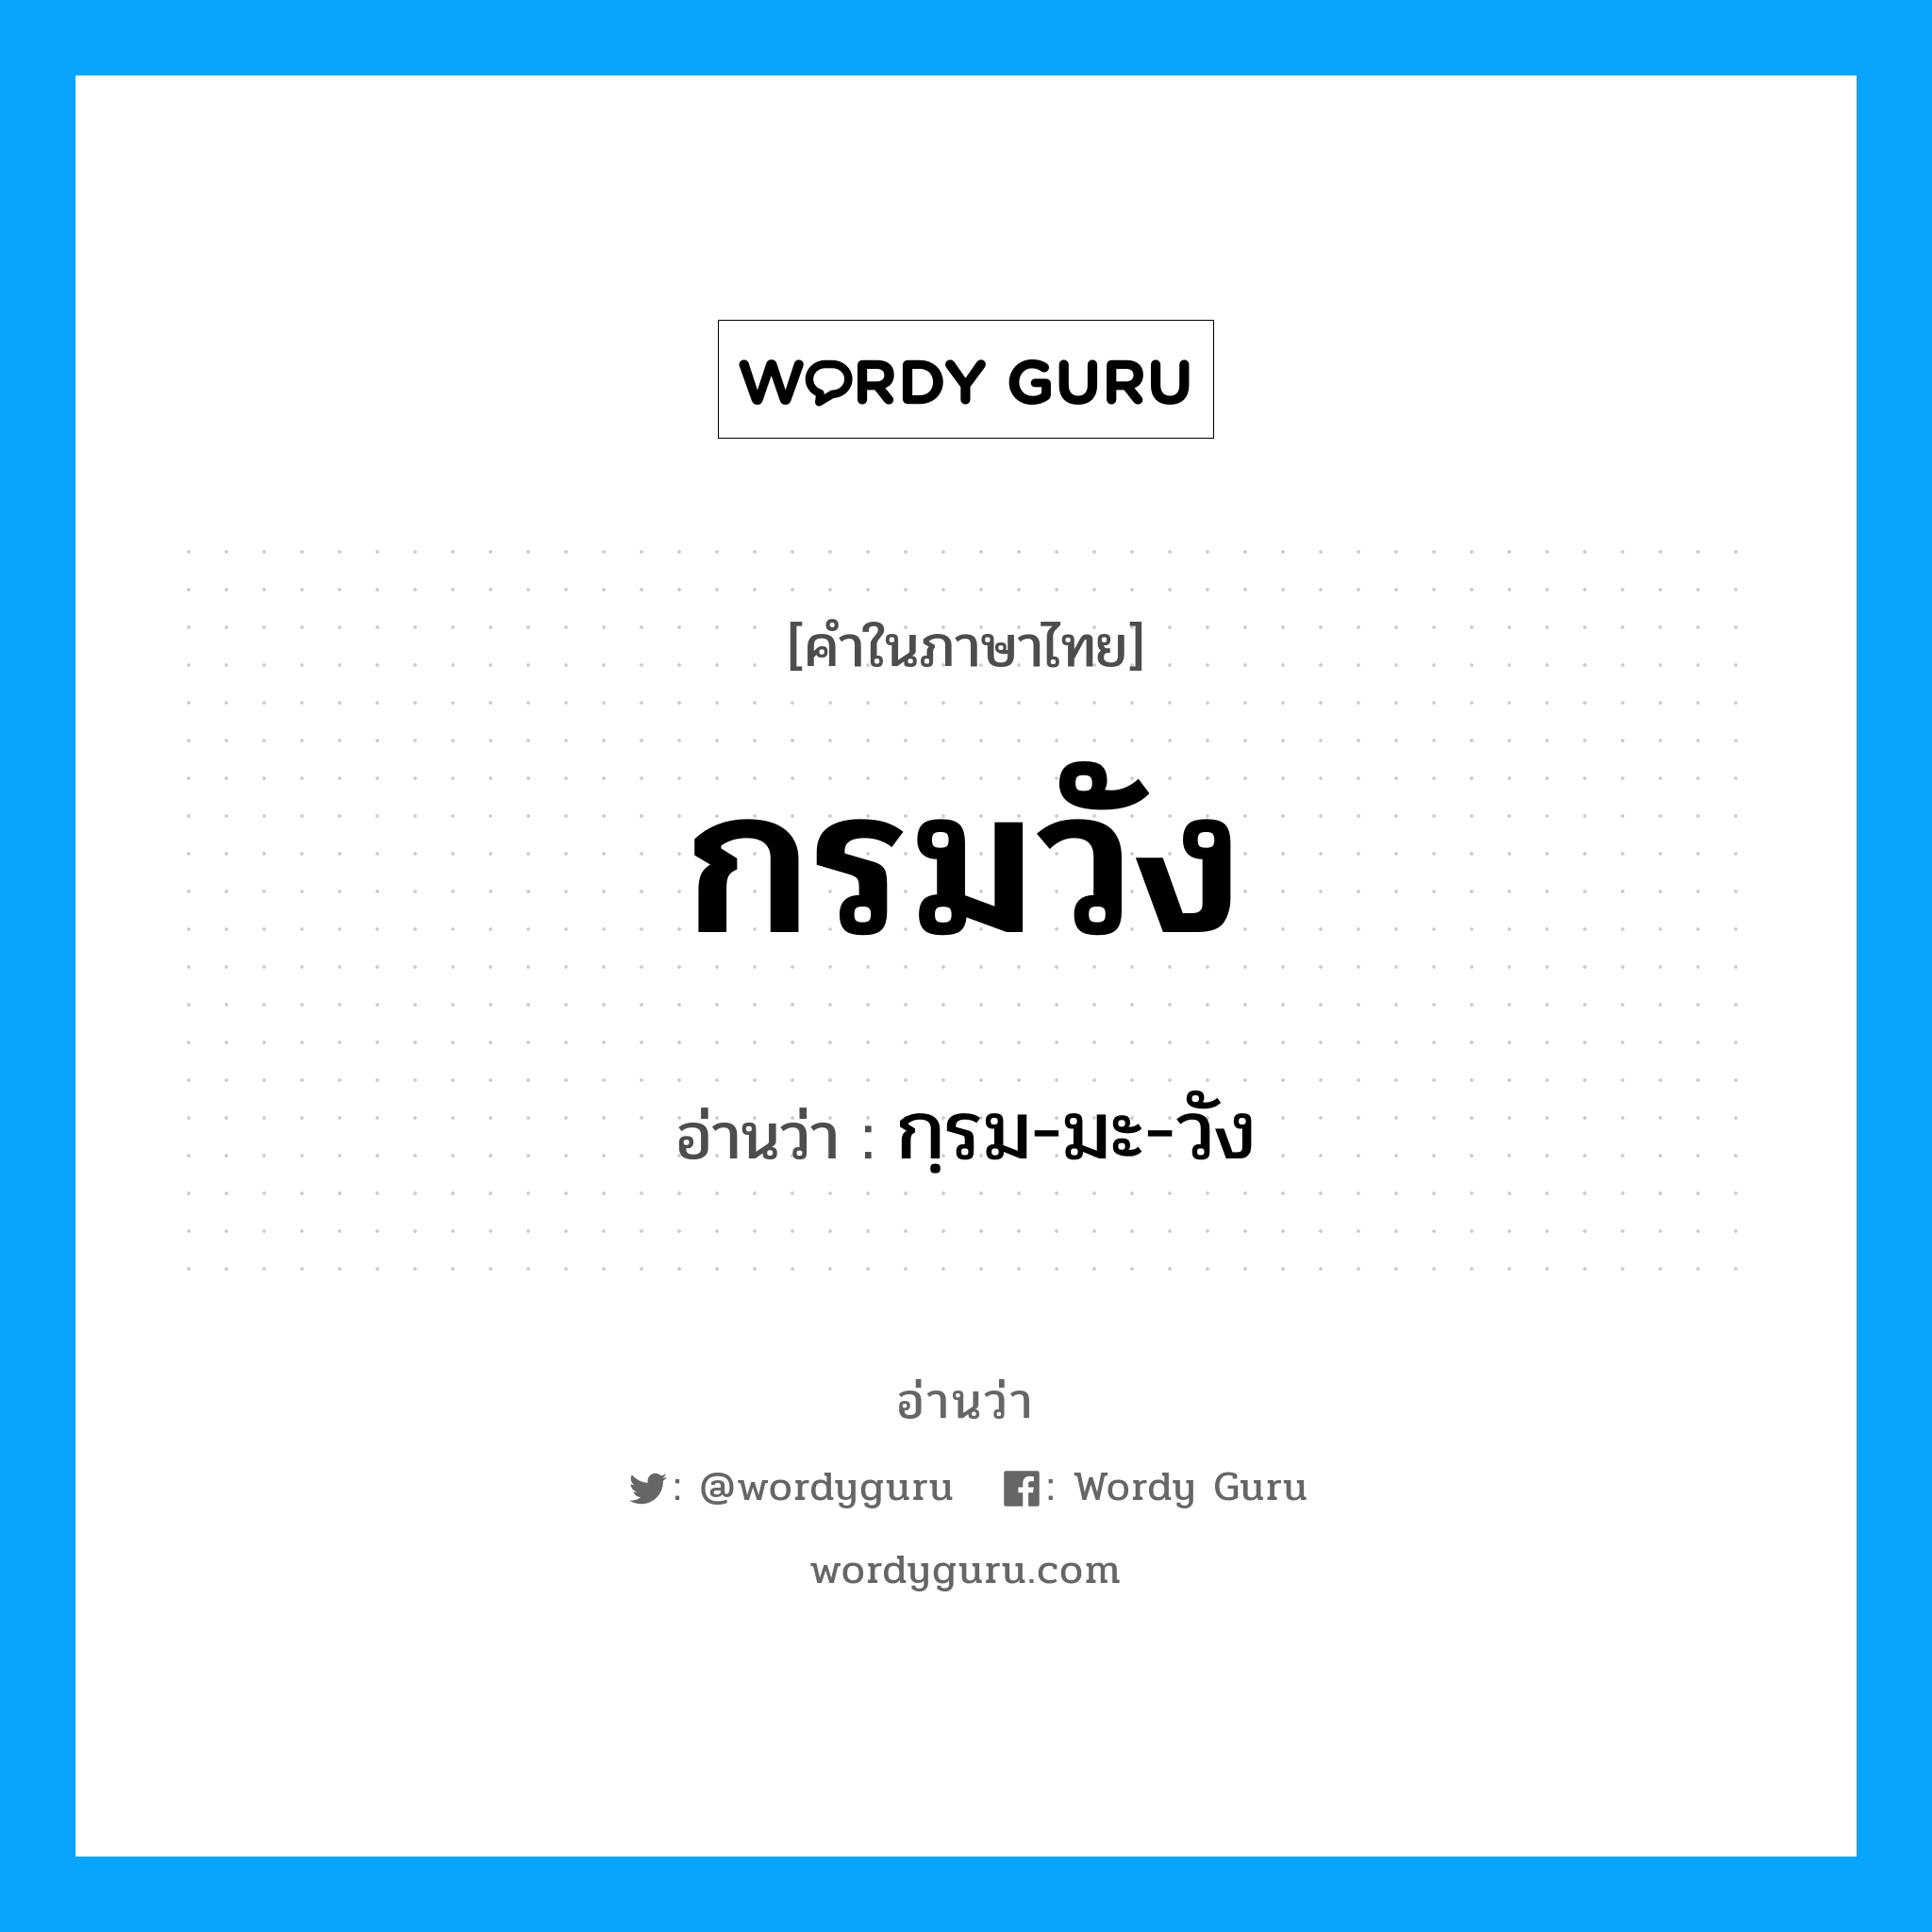 กฺรม-มะ-วัง เป็นคำอ่านของคำไหน?, คำในภาษาไทย กฺรม-มะ-วัง อ่านว่า กรมวัง